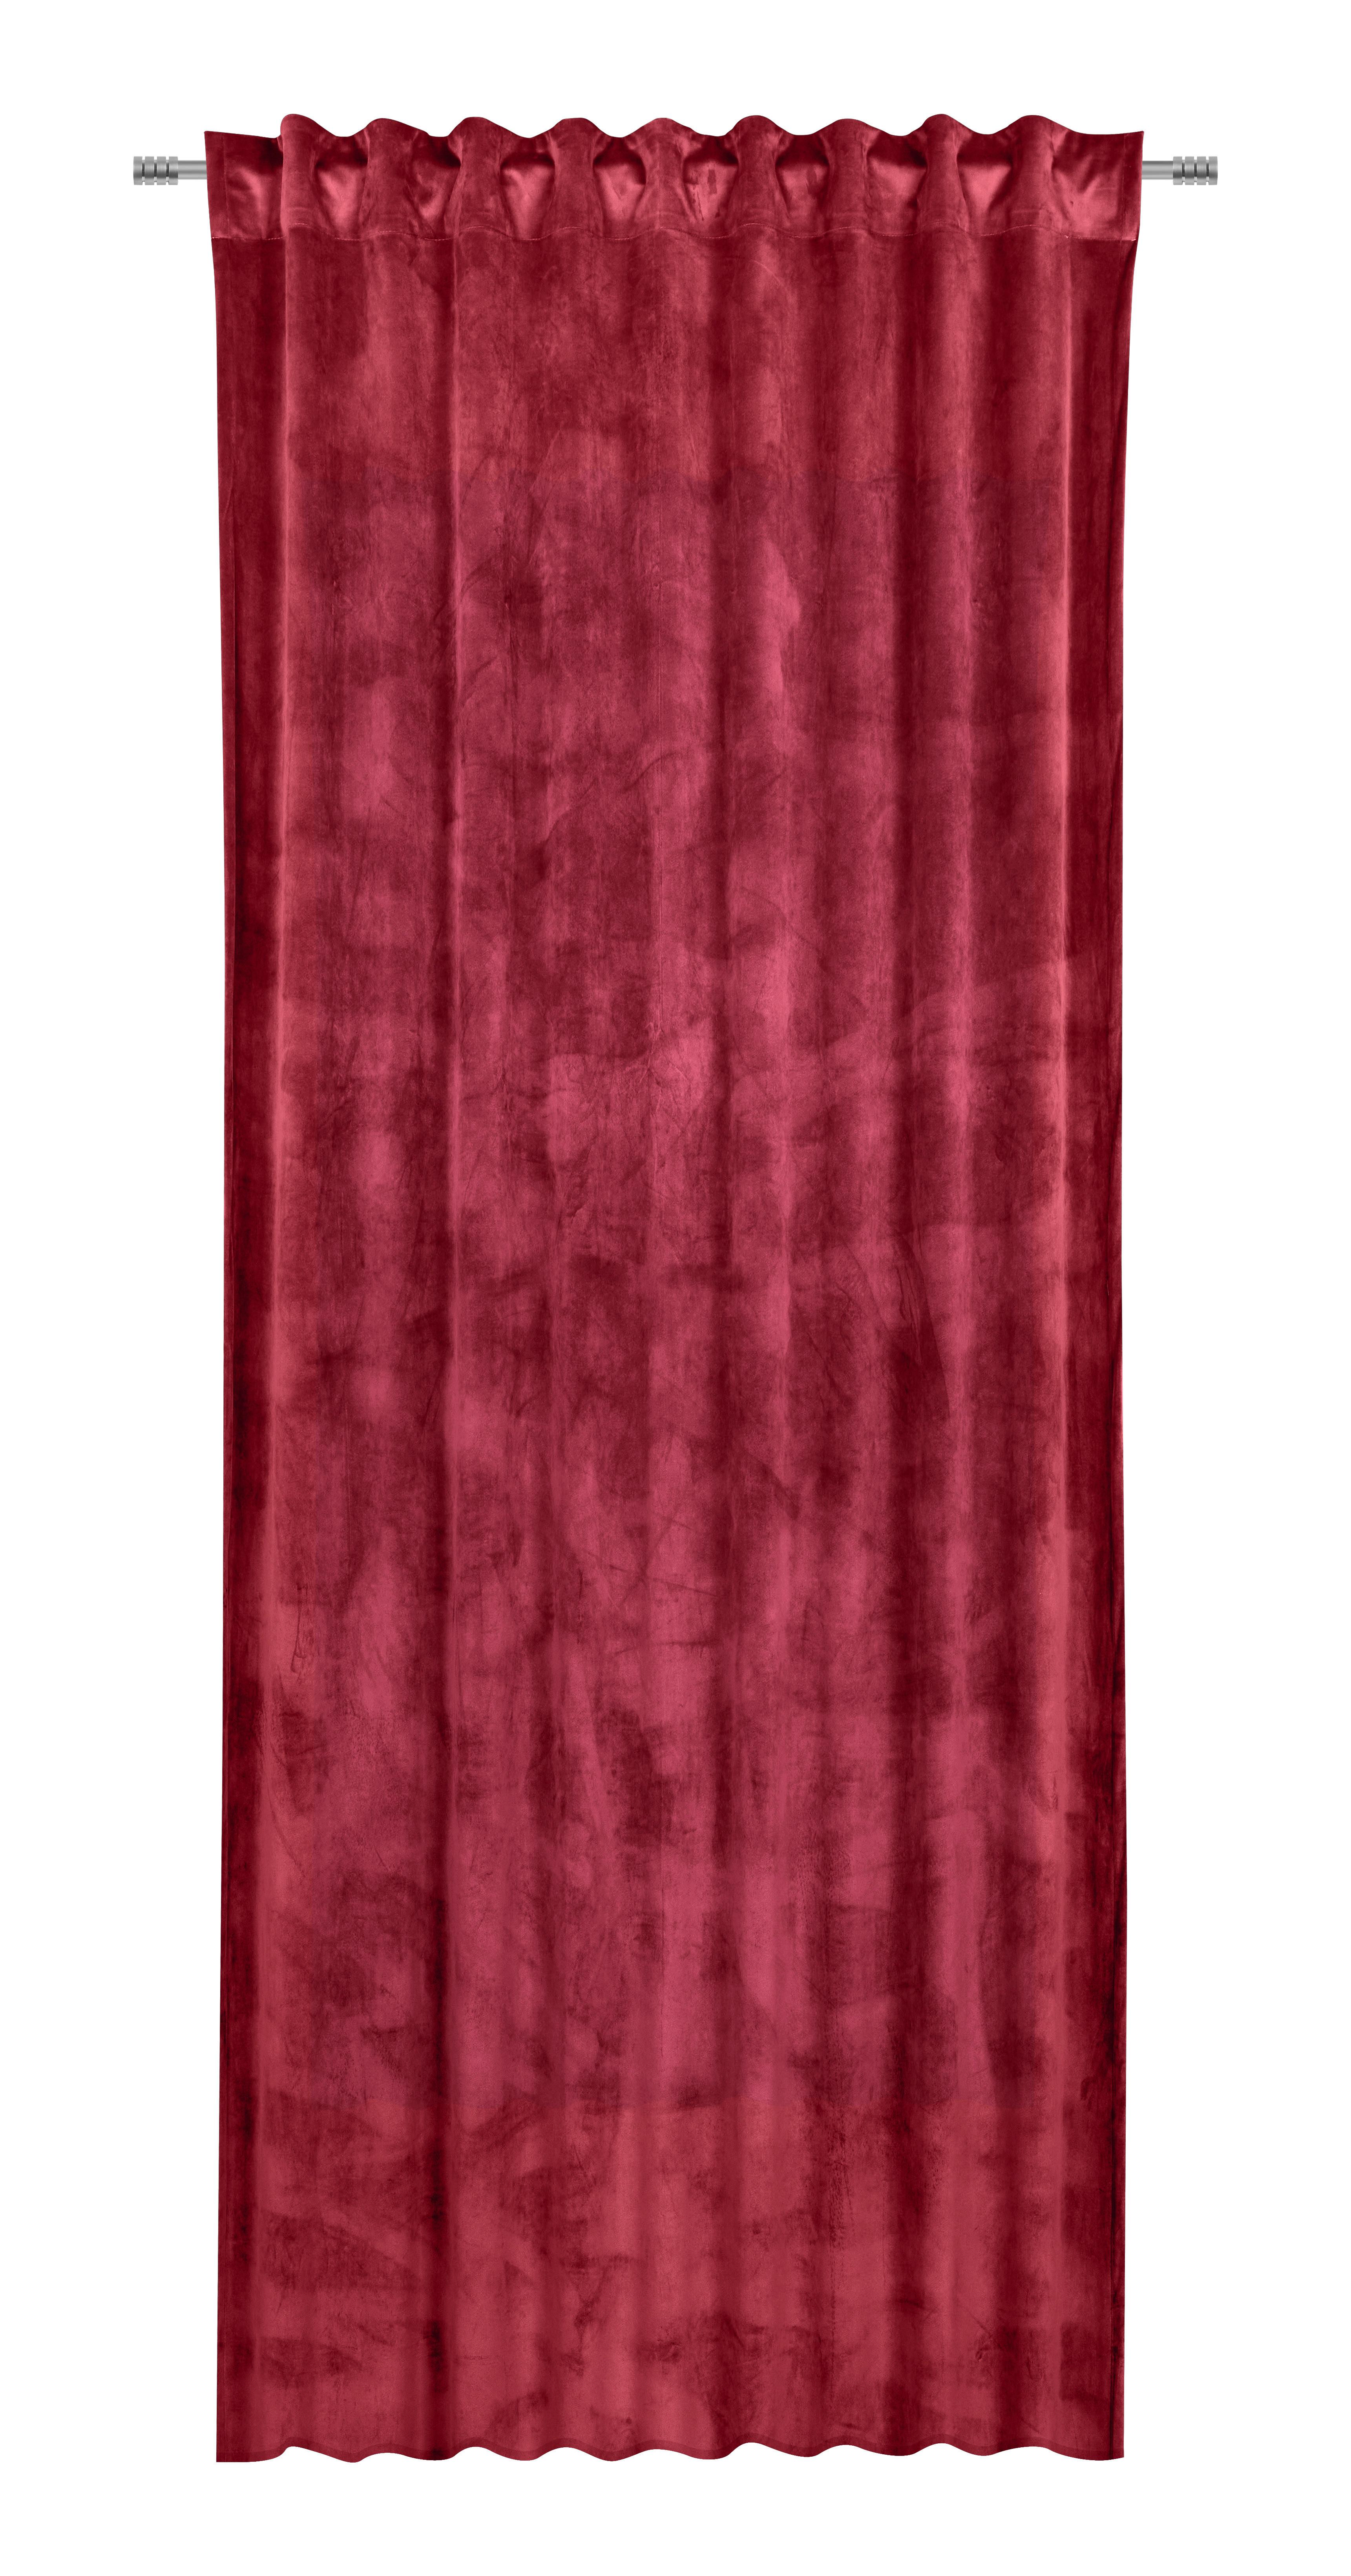 Fertigvorhang Viola in Bordeaux ca. 140x245cm - Bordeaux, KONVENTIONELL, Textil (140/245cm) - Premium Living